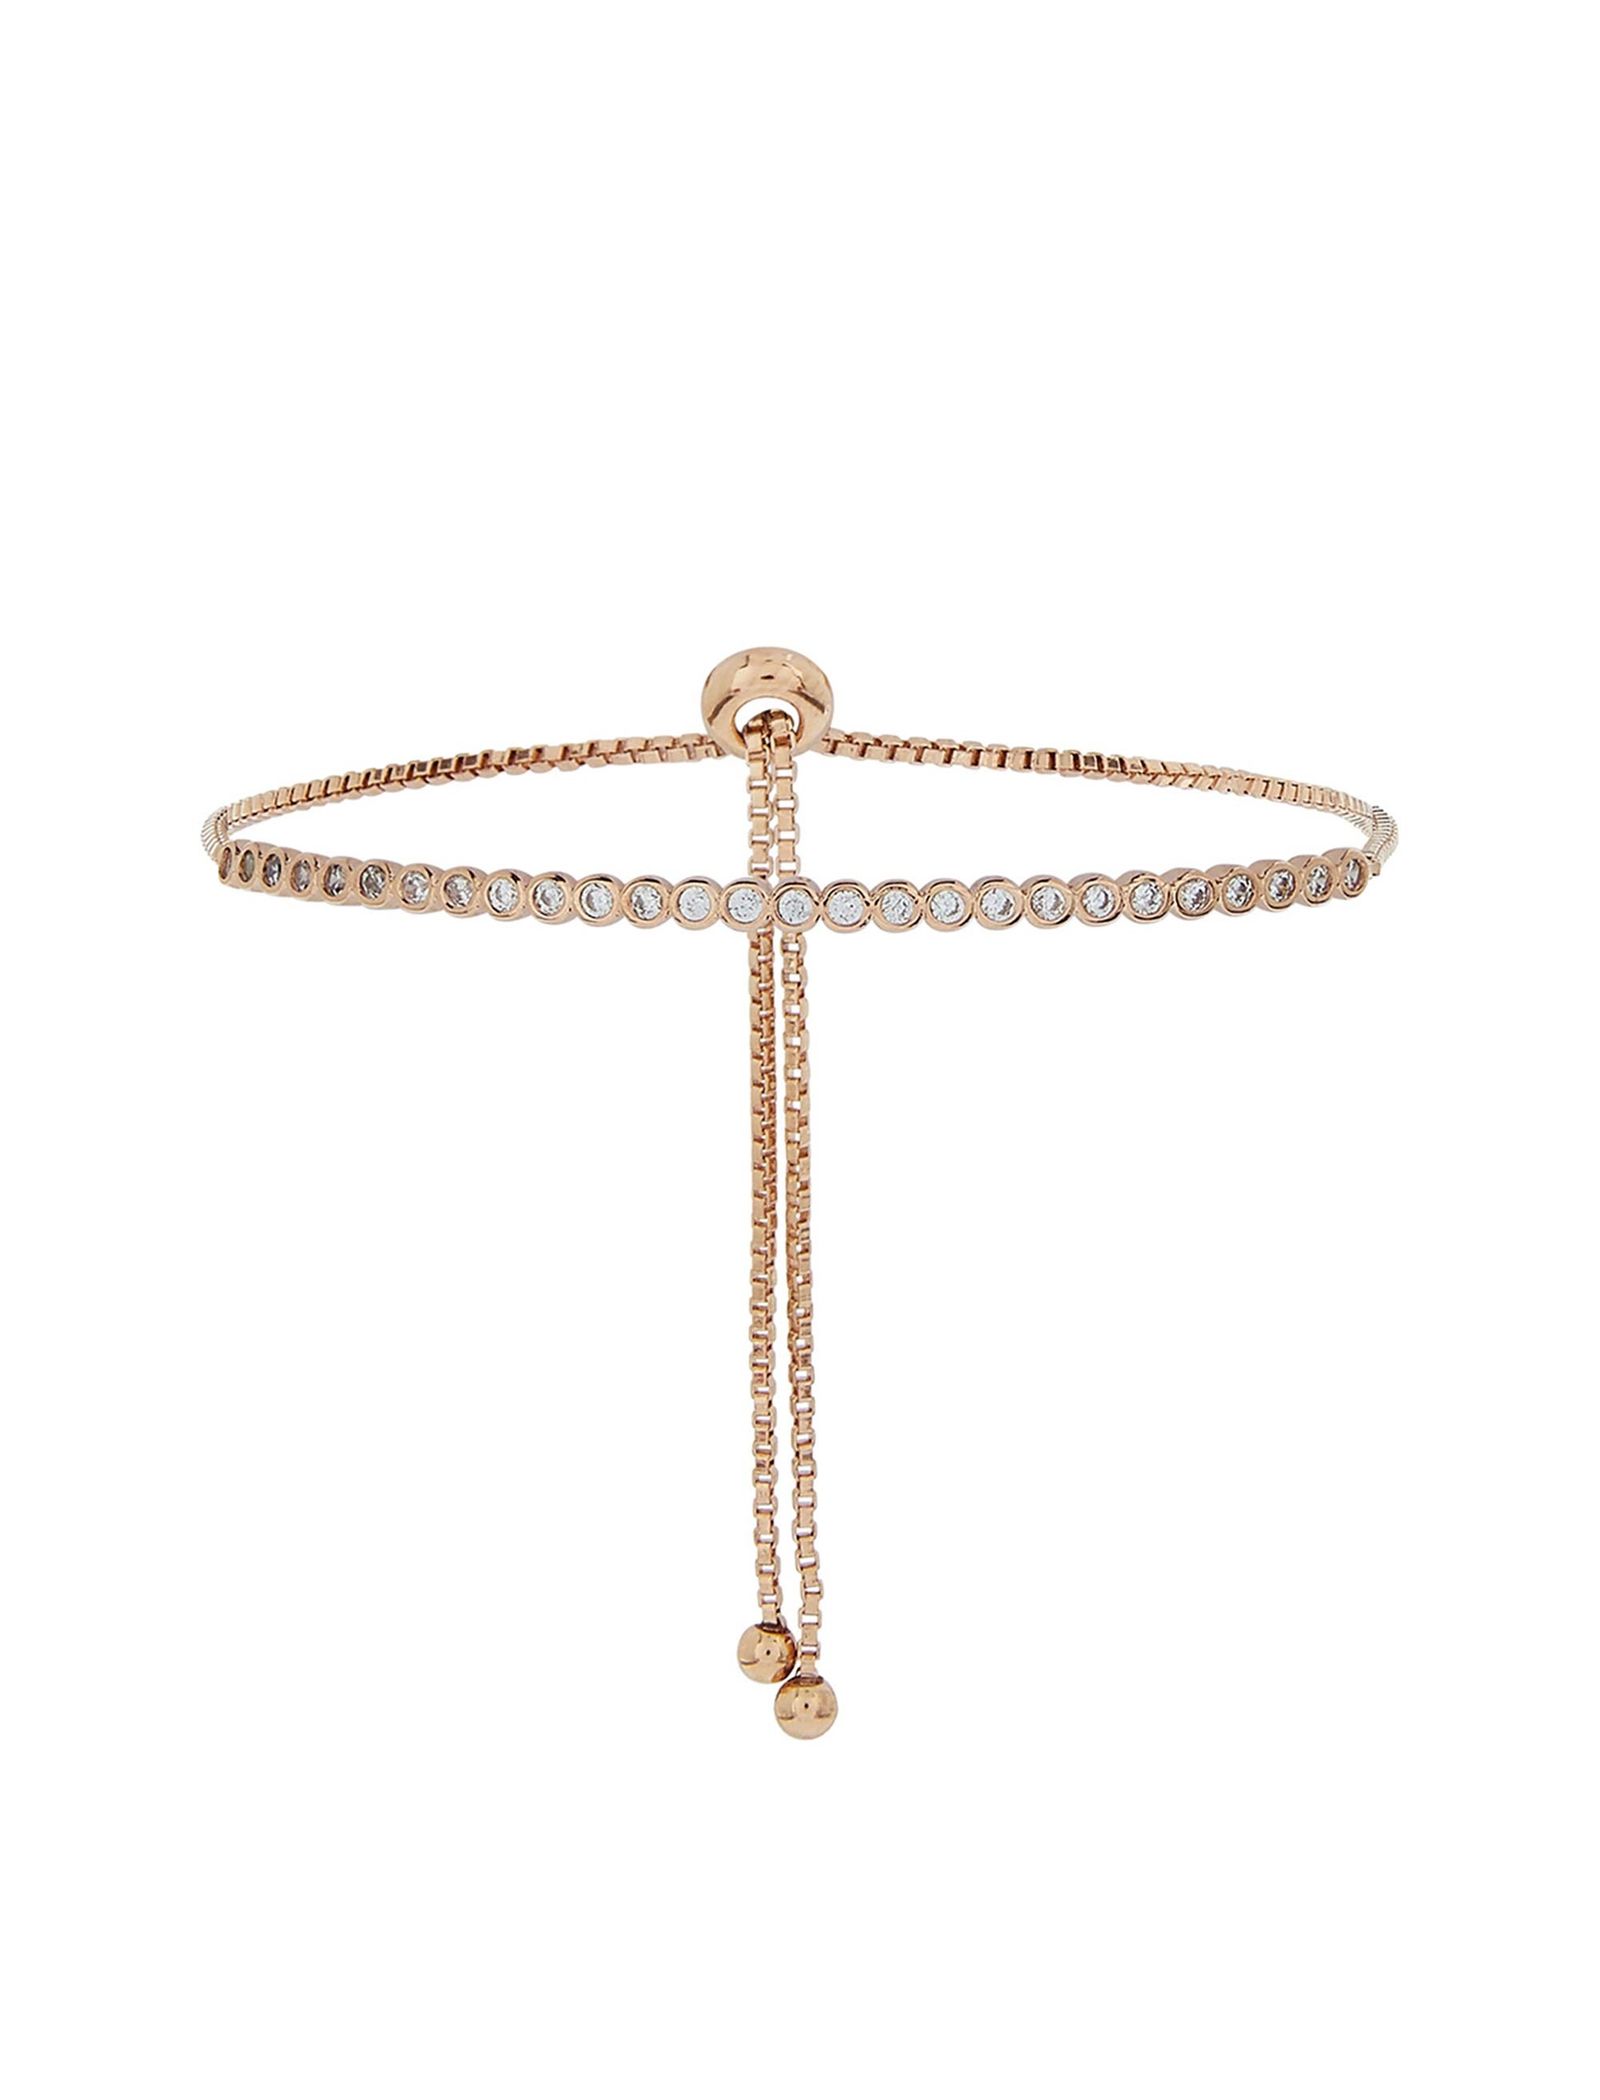 دستبند زنجیری زنانه Delicate Sparkle Bar - اکسسورایز تک سایز - رزگلد - 2